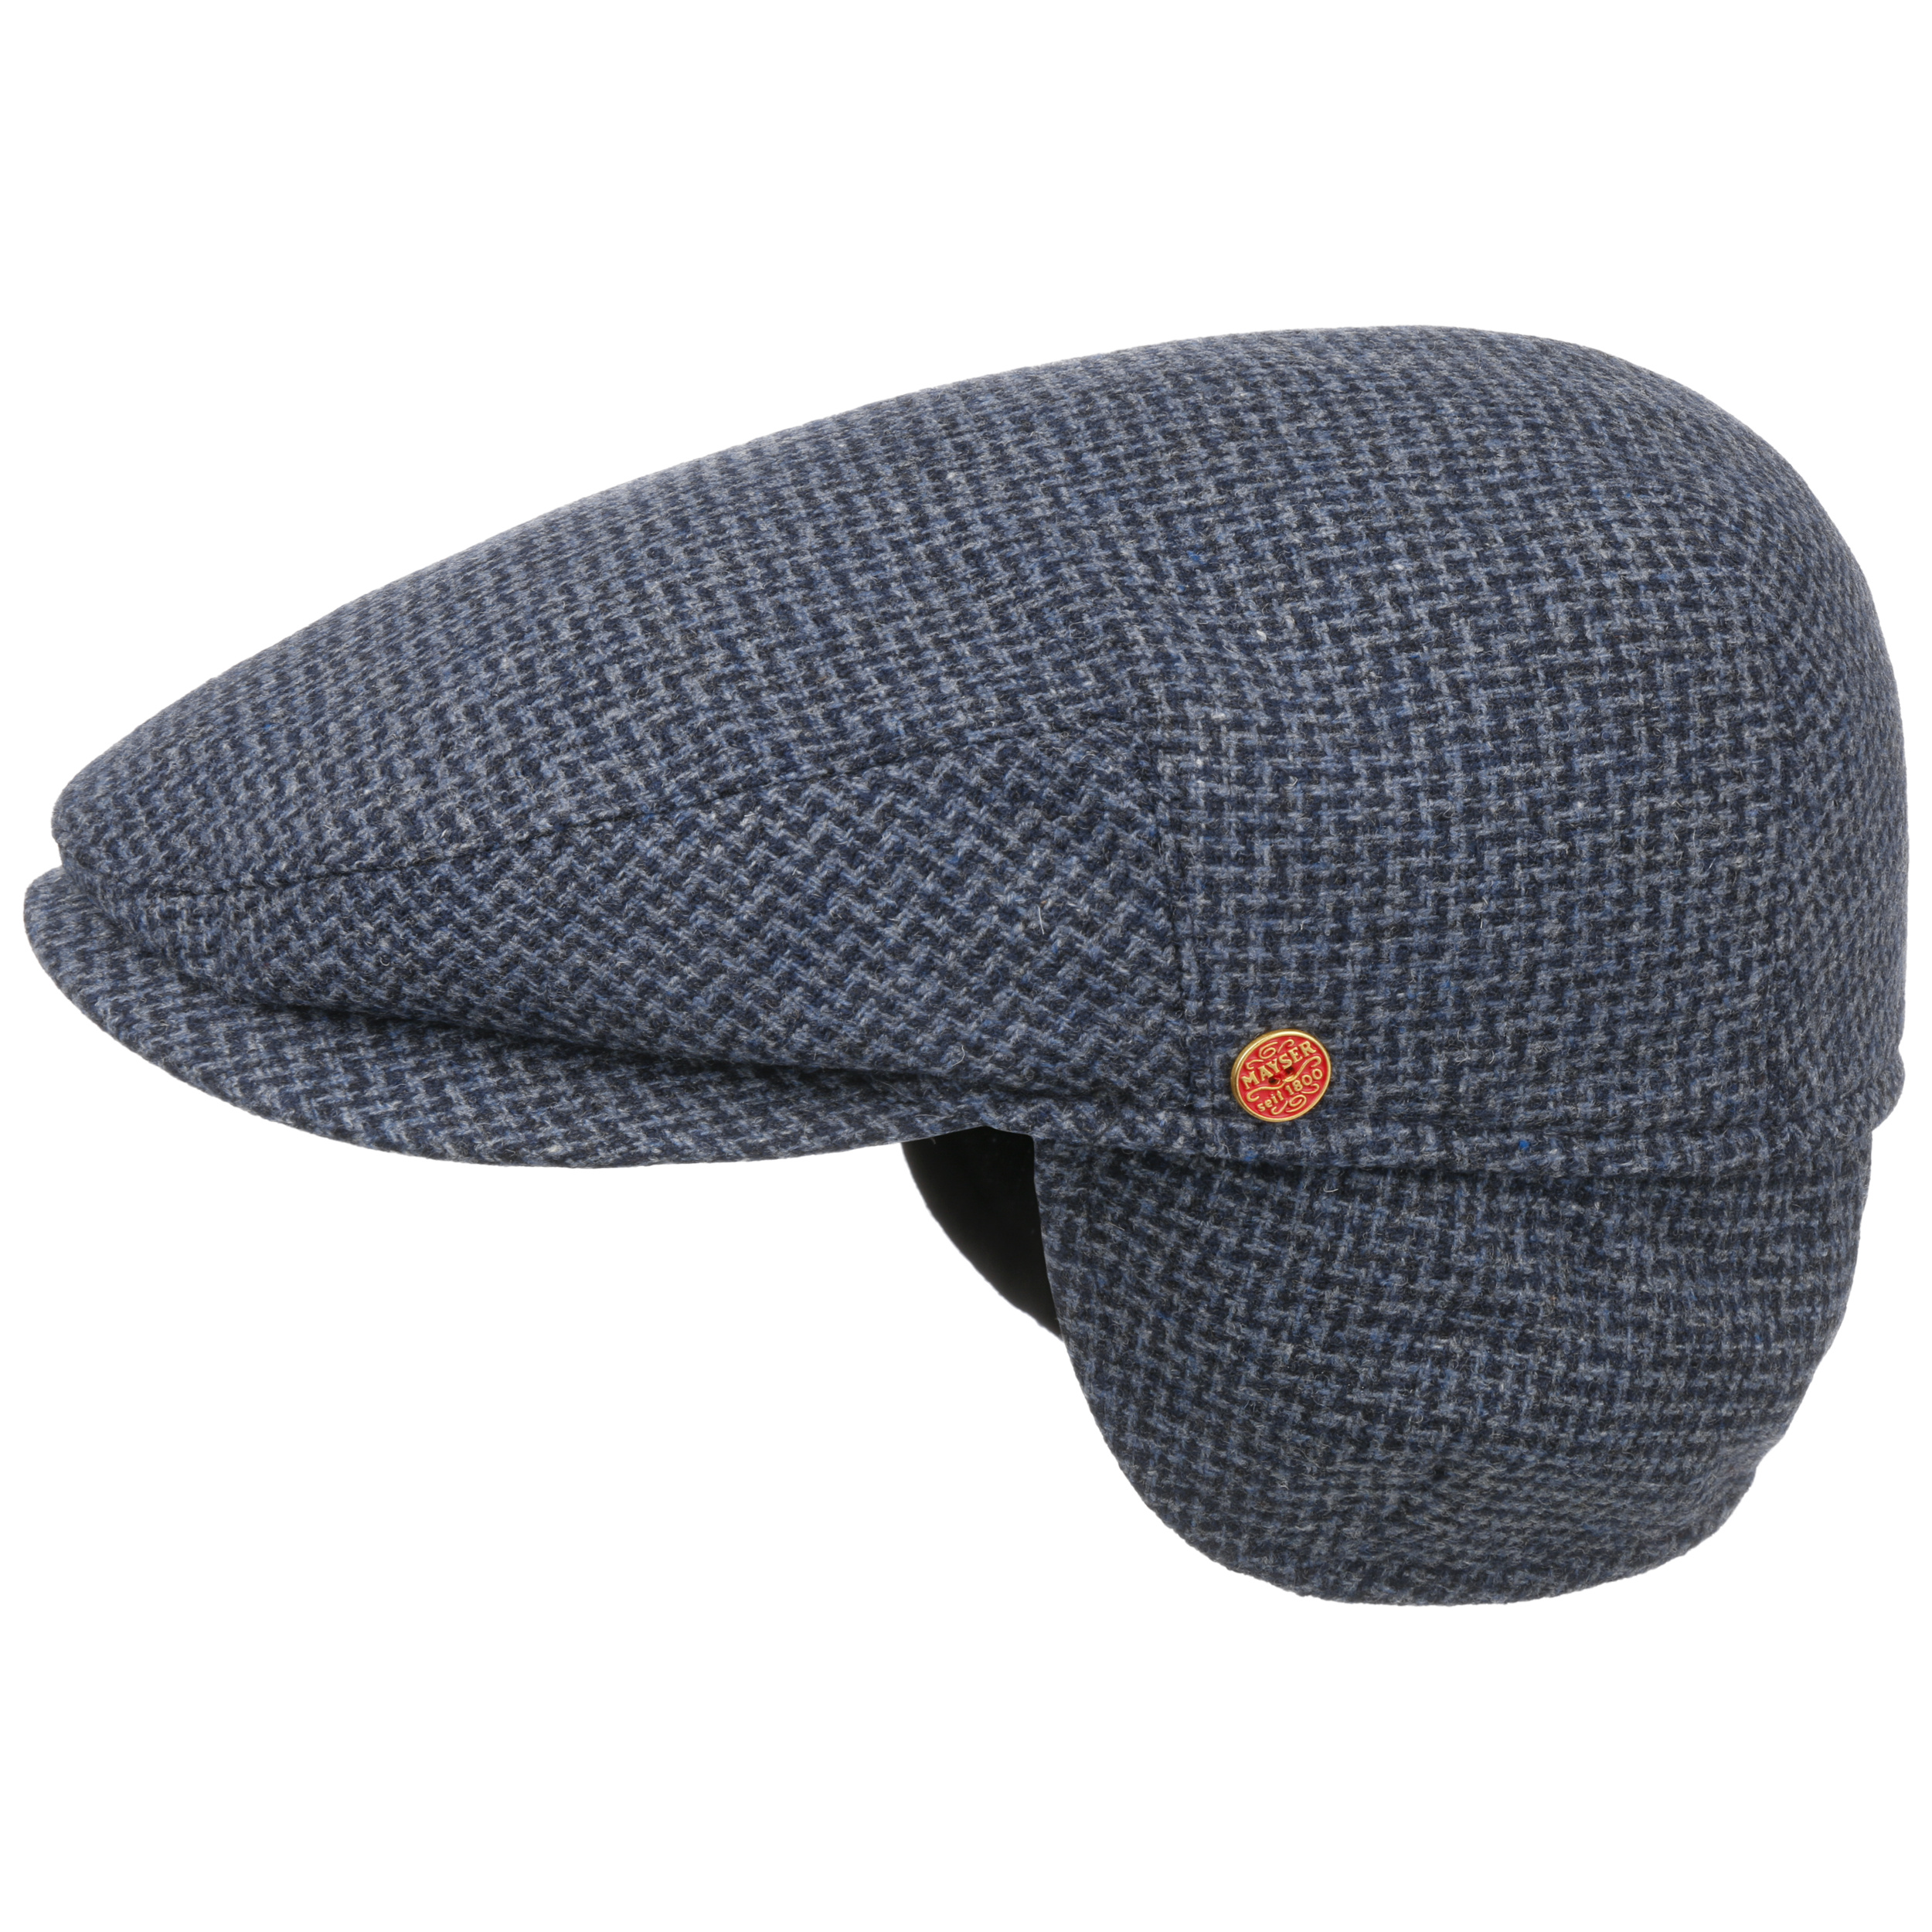 Merlino Zigzag Flatcap mit Ohrenklappen by Mayser - 109,00 €